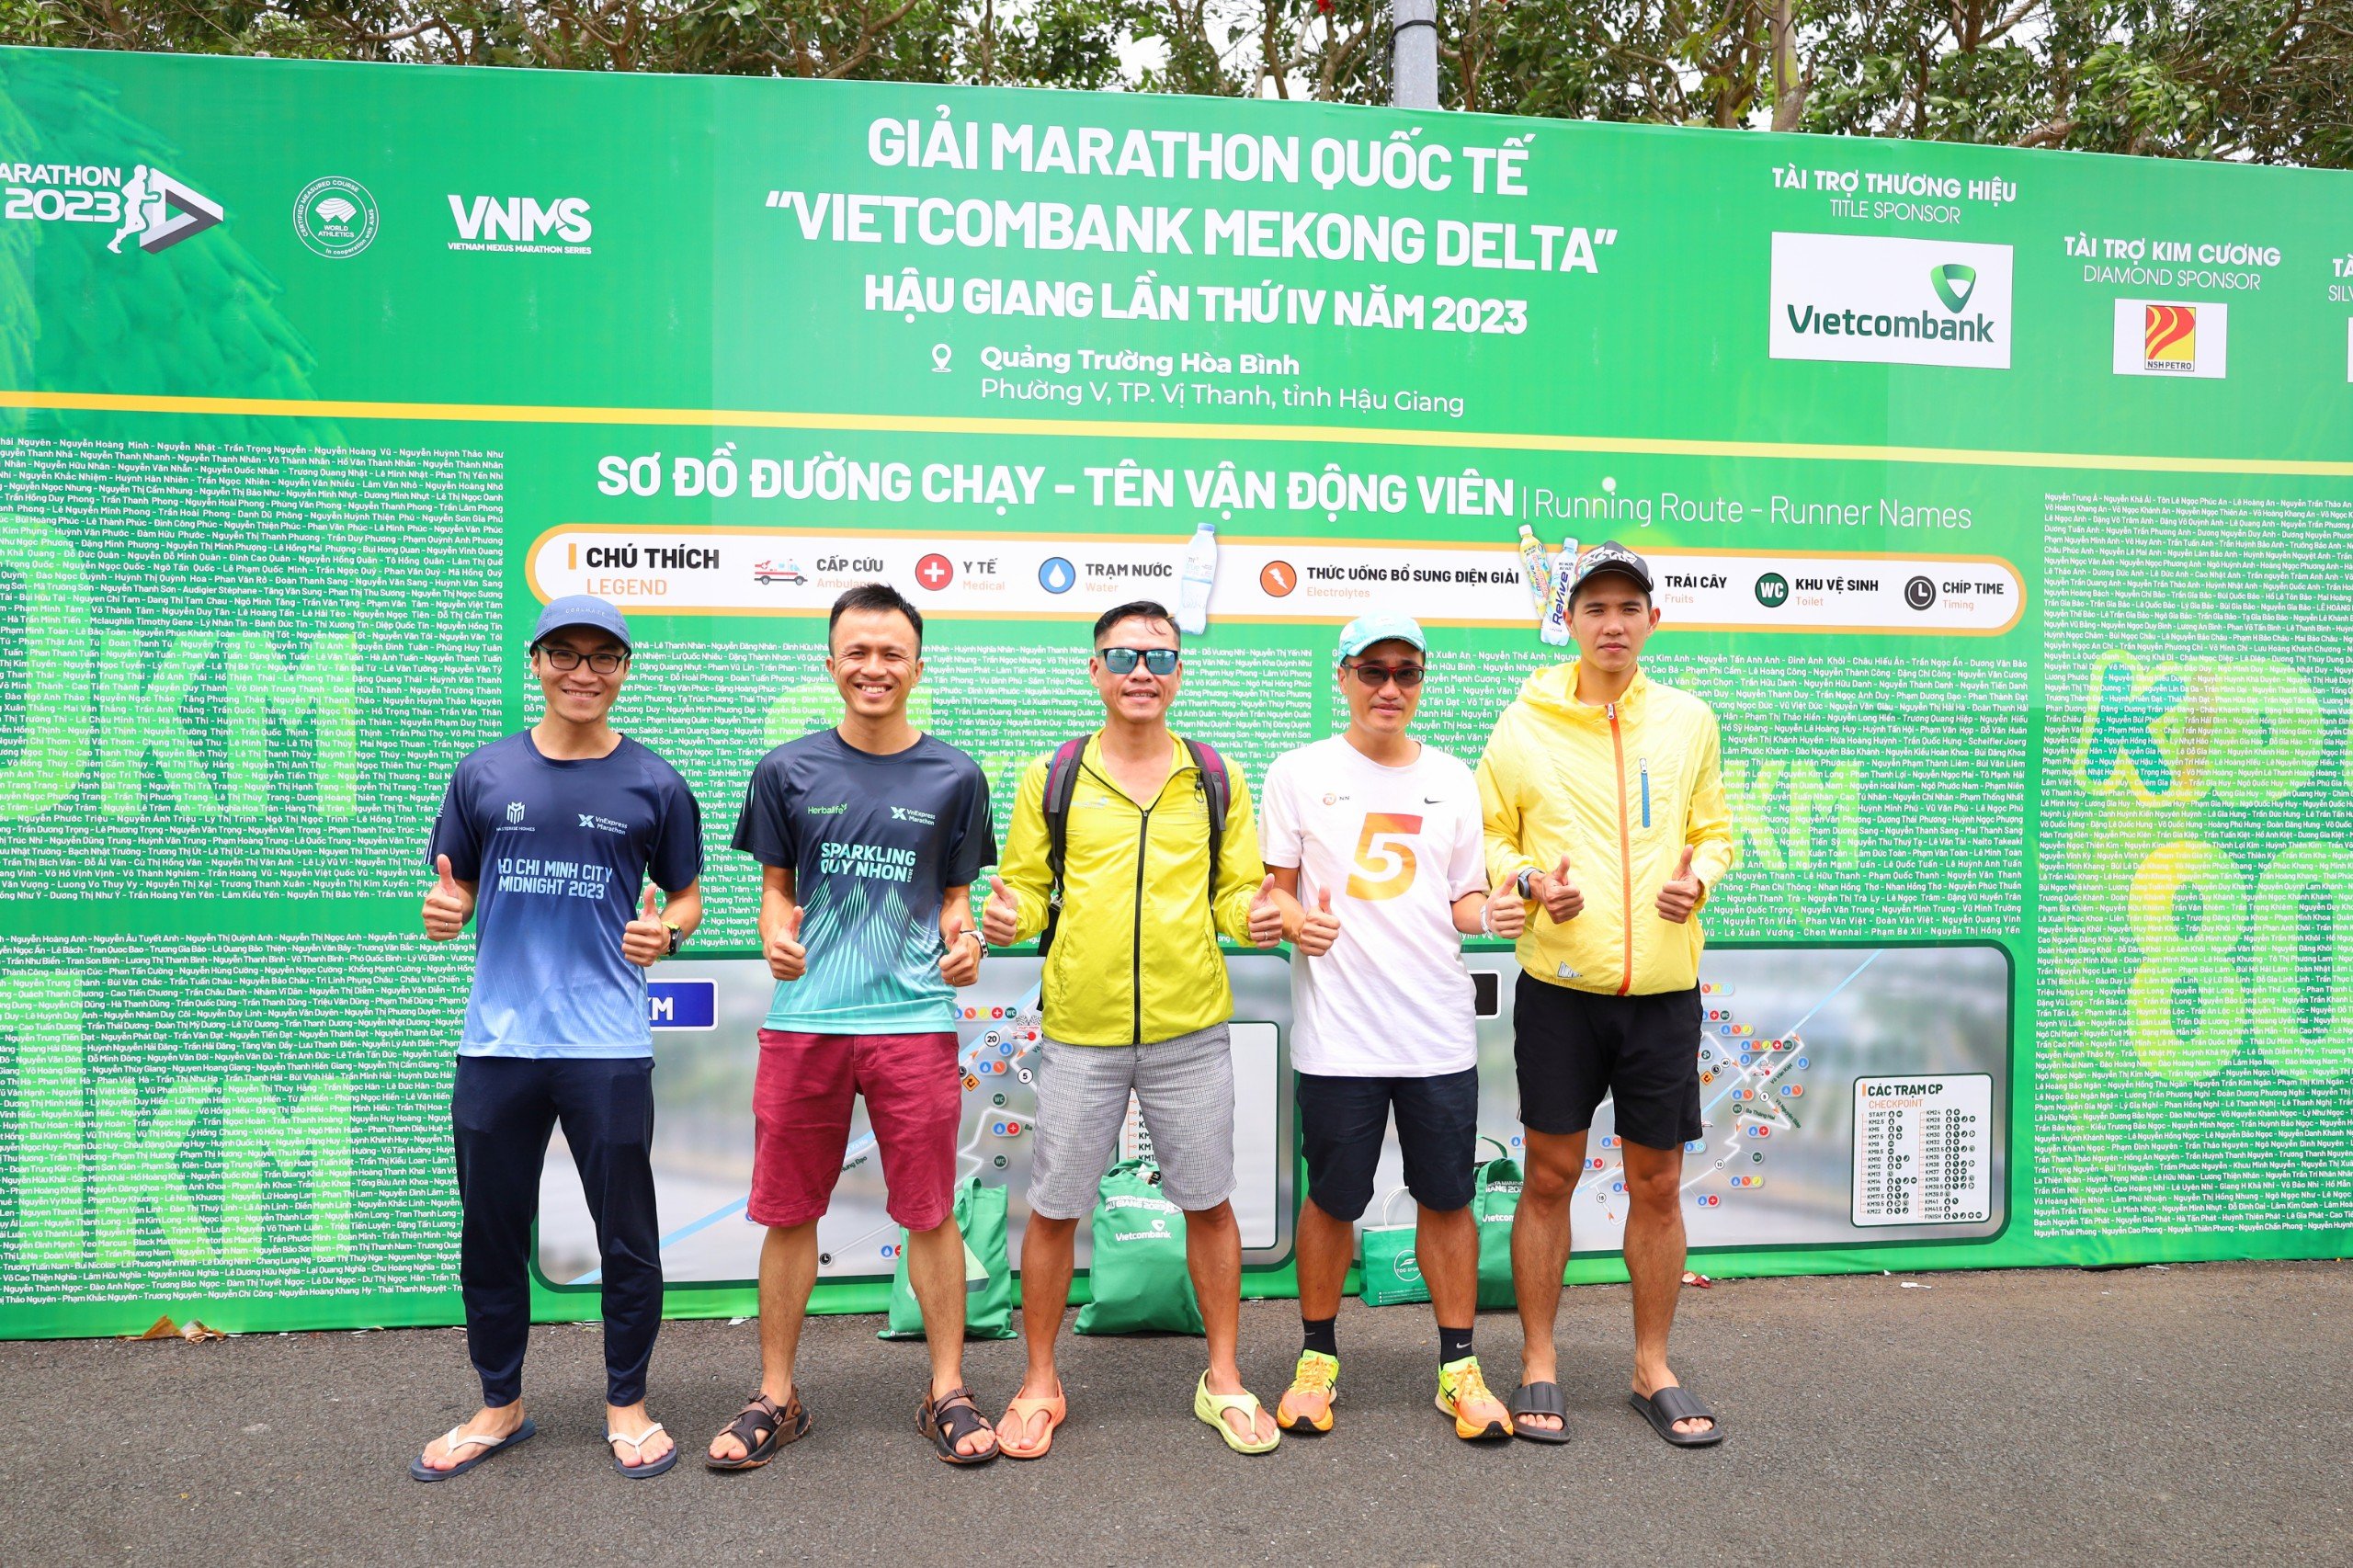 Các vận động viên đã sẵn sàng tham gia giải Marathon quốc tế “Vietcombank Mekong Delta” với các cự ly chạy, chinh phục các cung đường trên địa bàn TP. Vị Thanh.